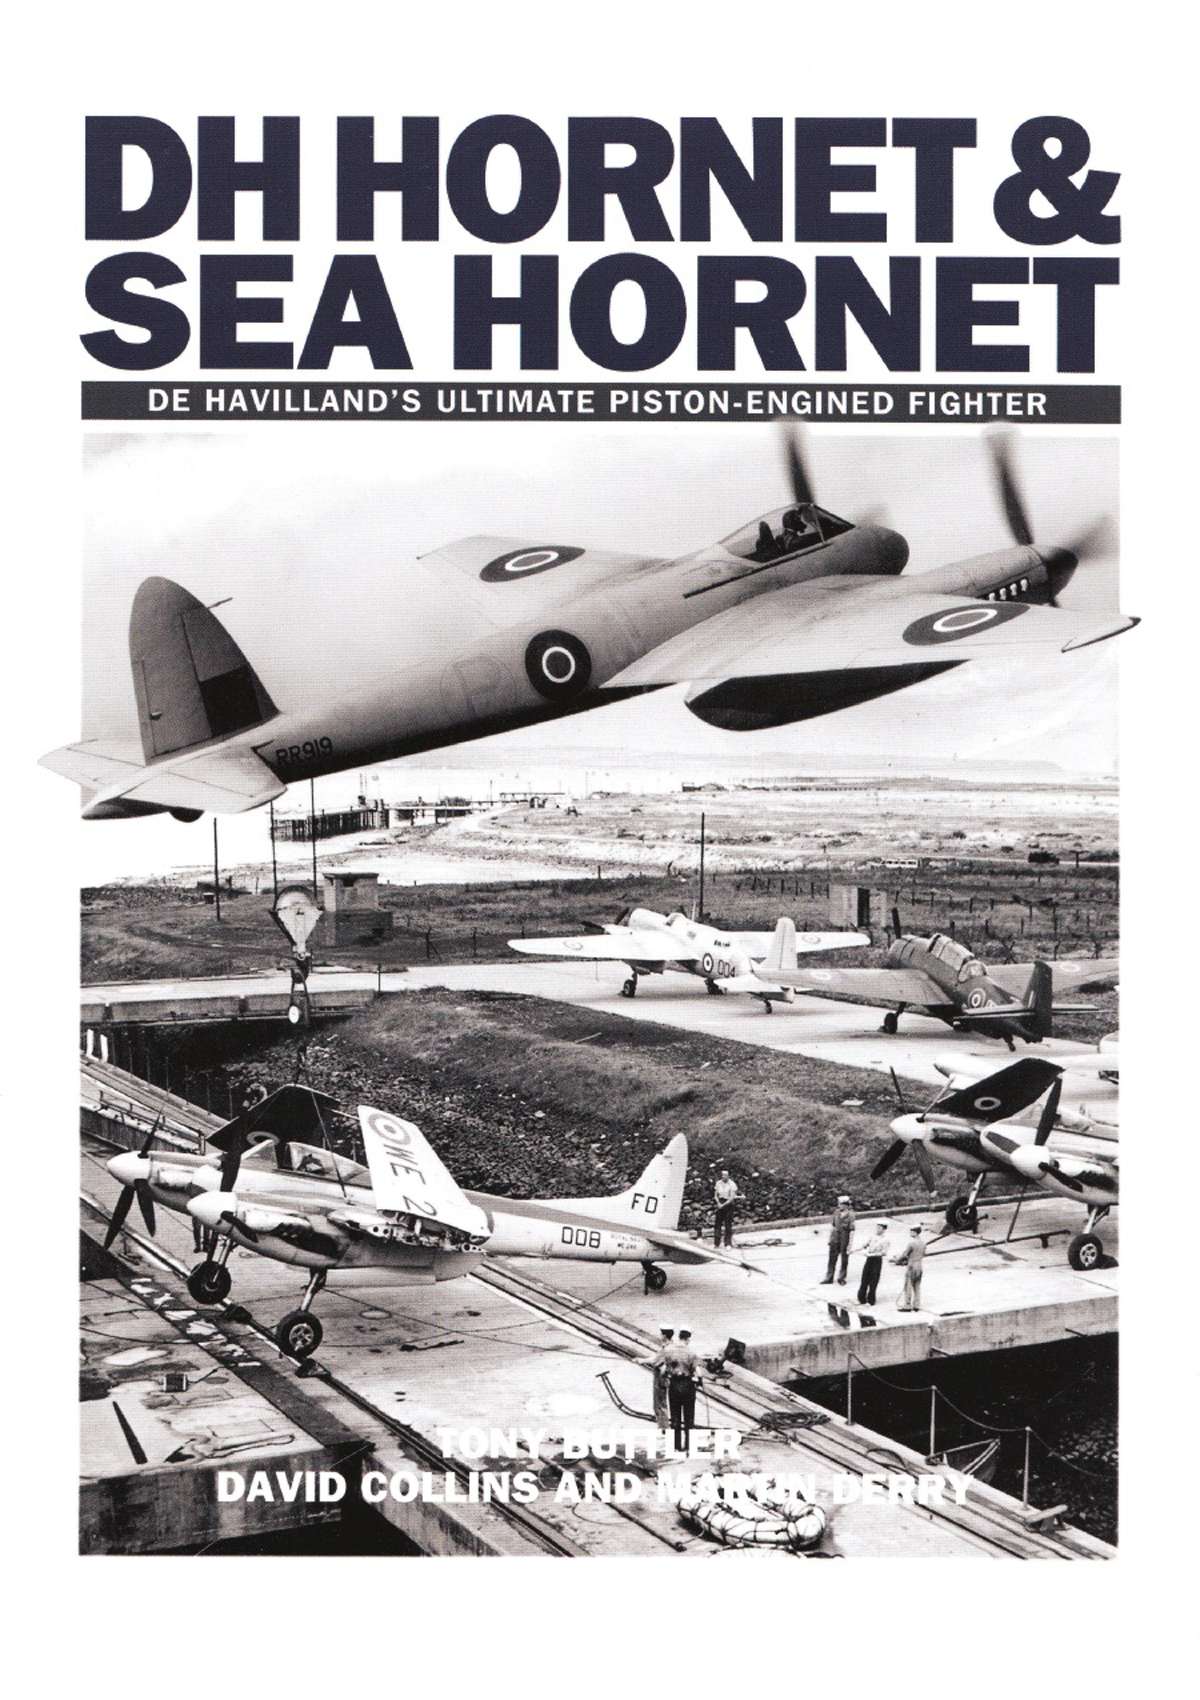 De Havilland Hornet & Sea Hornet